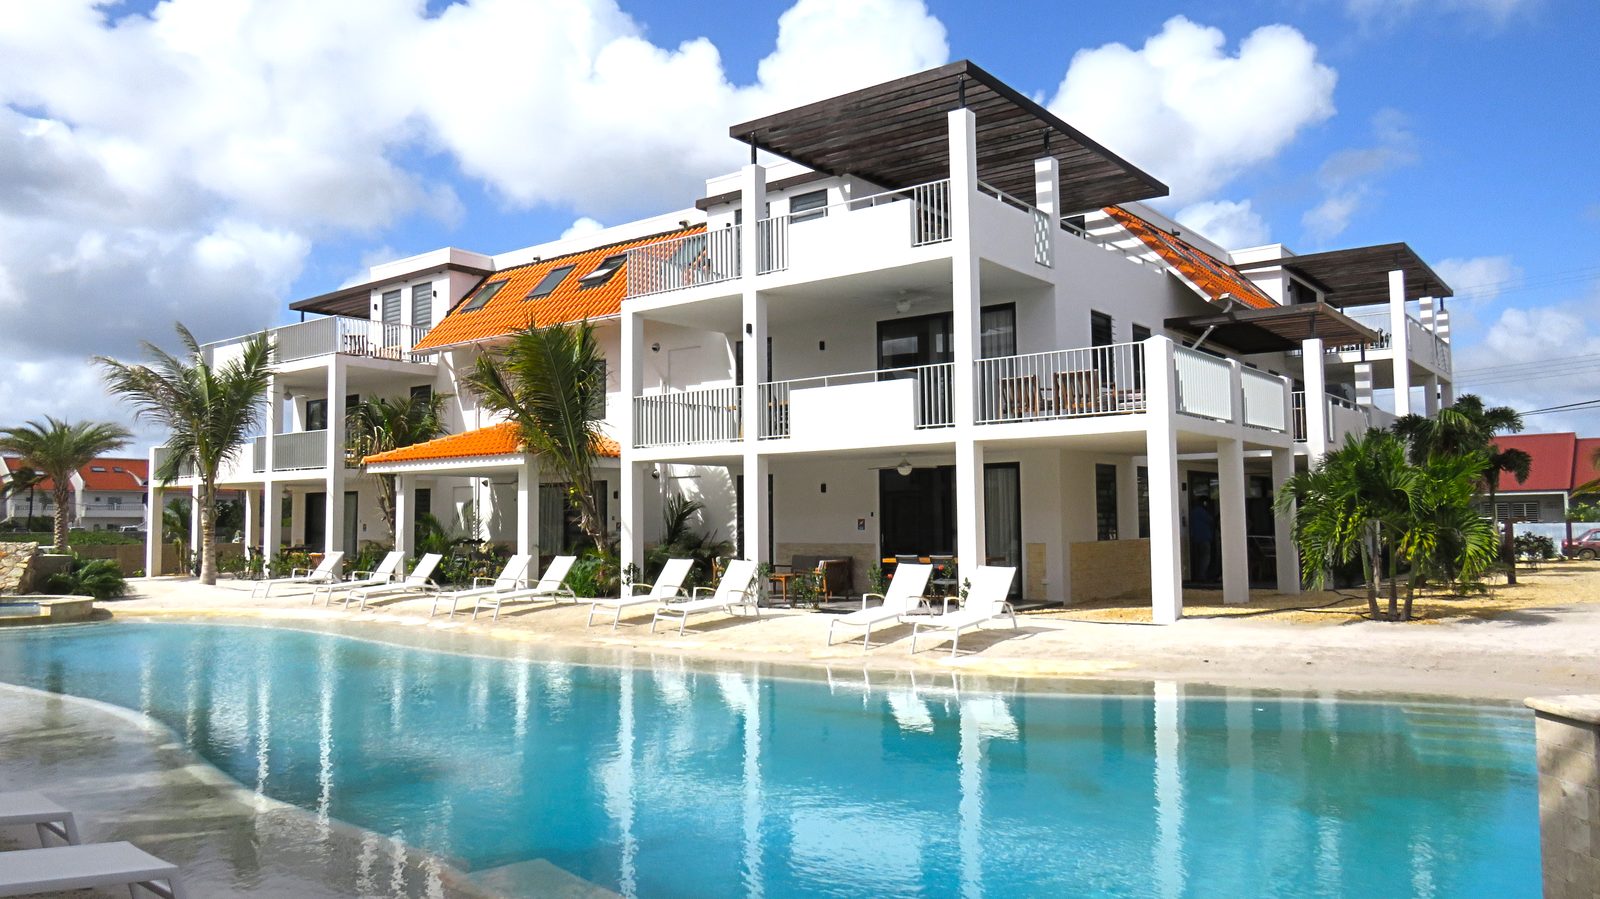 ¿Buscas una estancia en Bonaire? Elige Resort Bonaire. Un nuevo y lujoso complejo turístico con apartamentos que ofrecen todo lo que necesitas.

